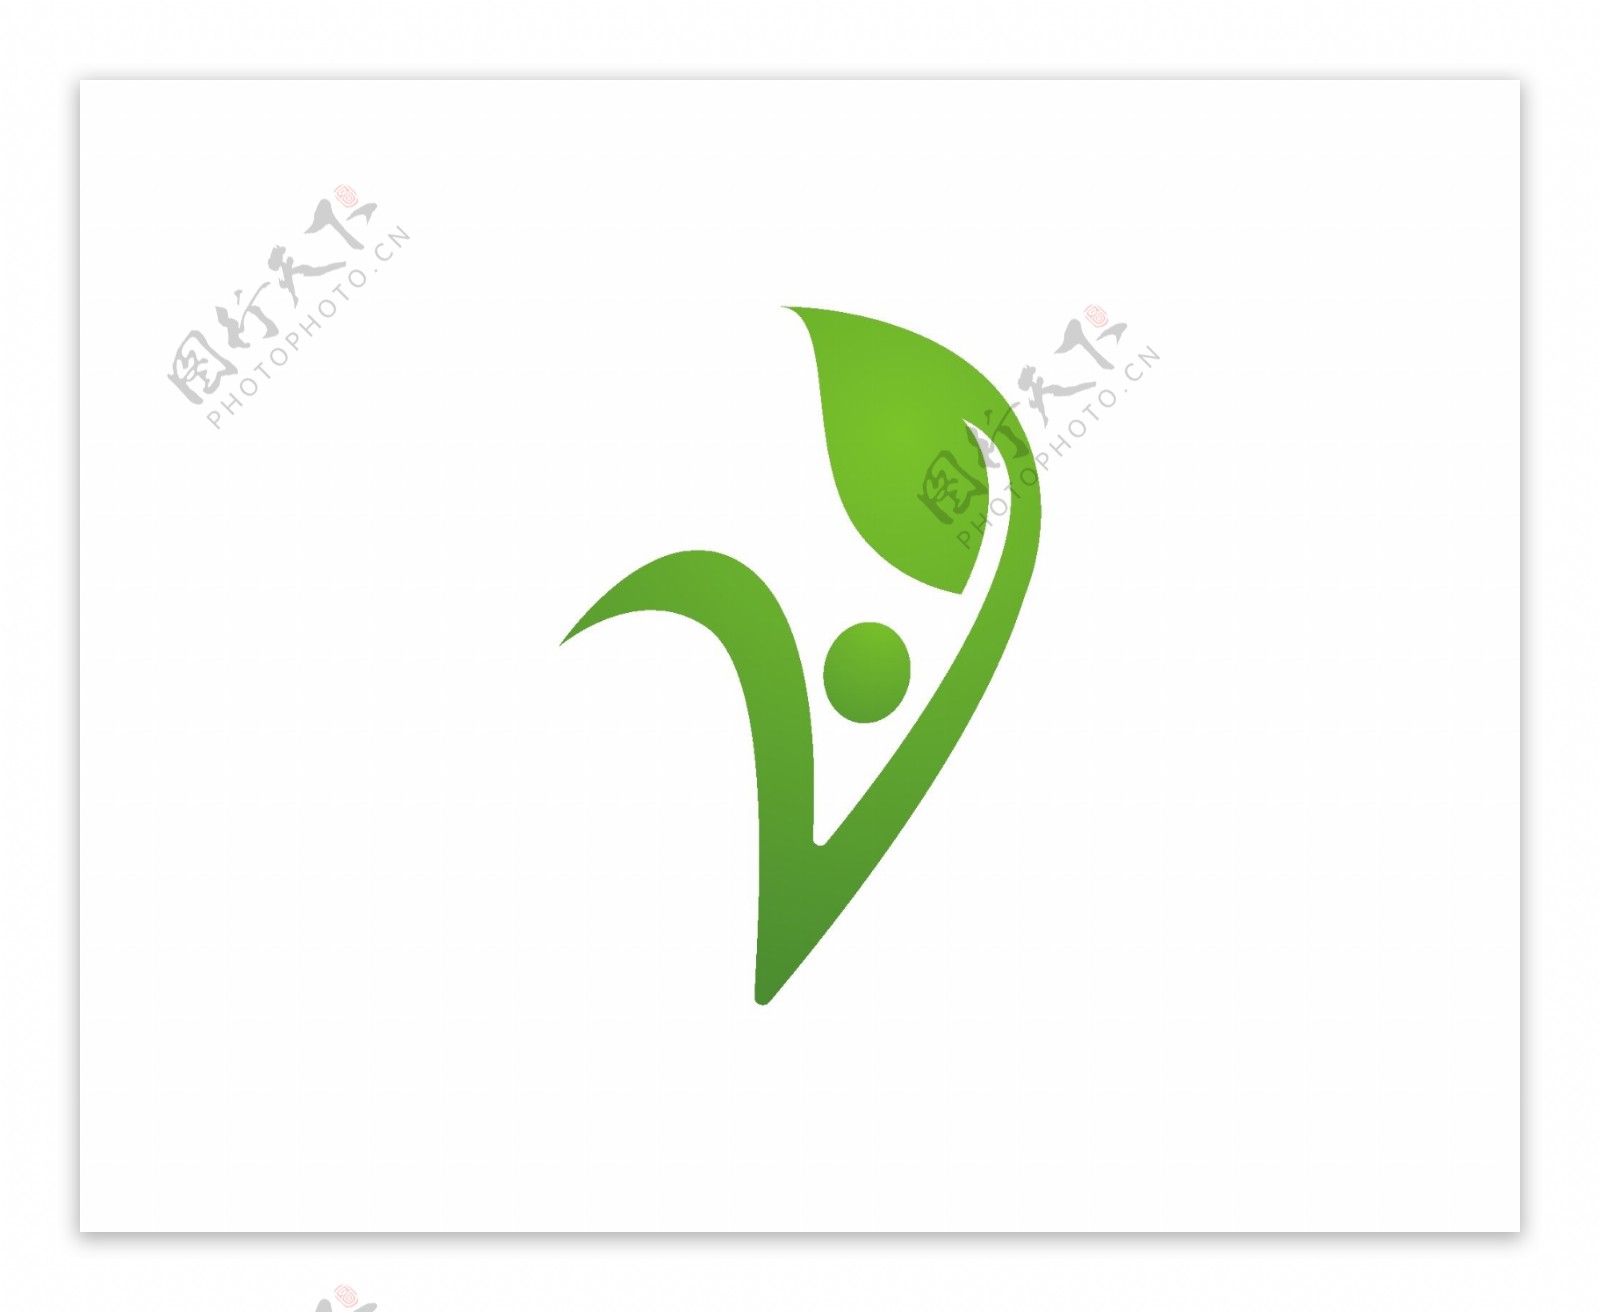 互联网绿色能源标识logo